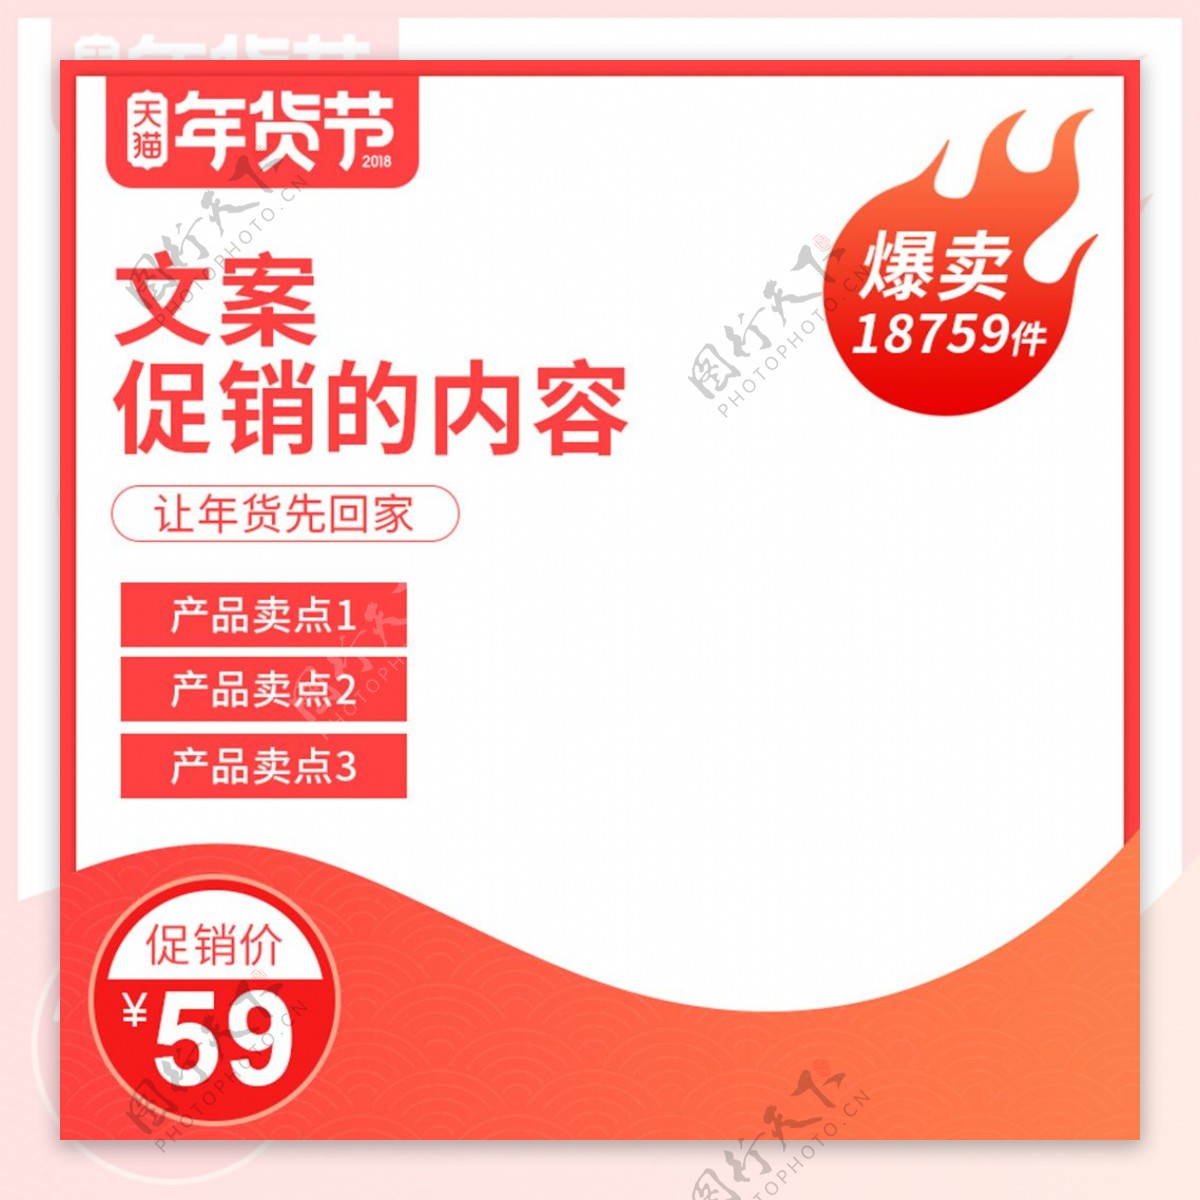 数码电器年货节主图食品茶饮中国风直通车图